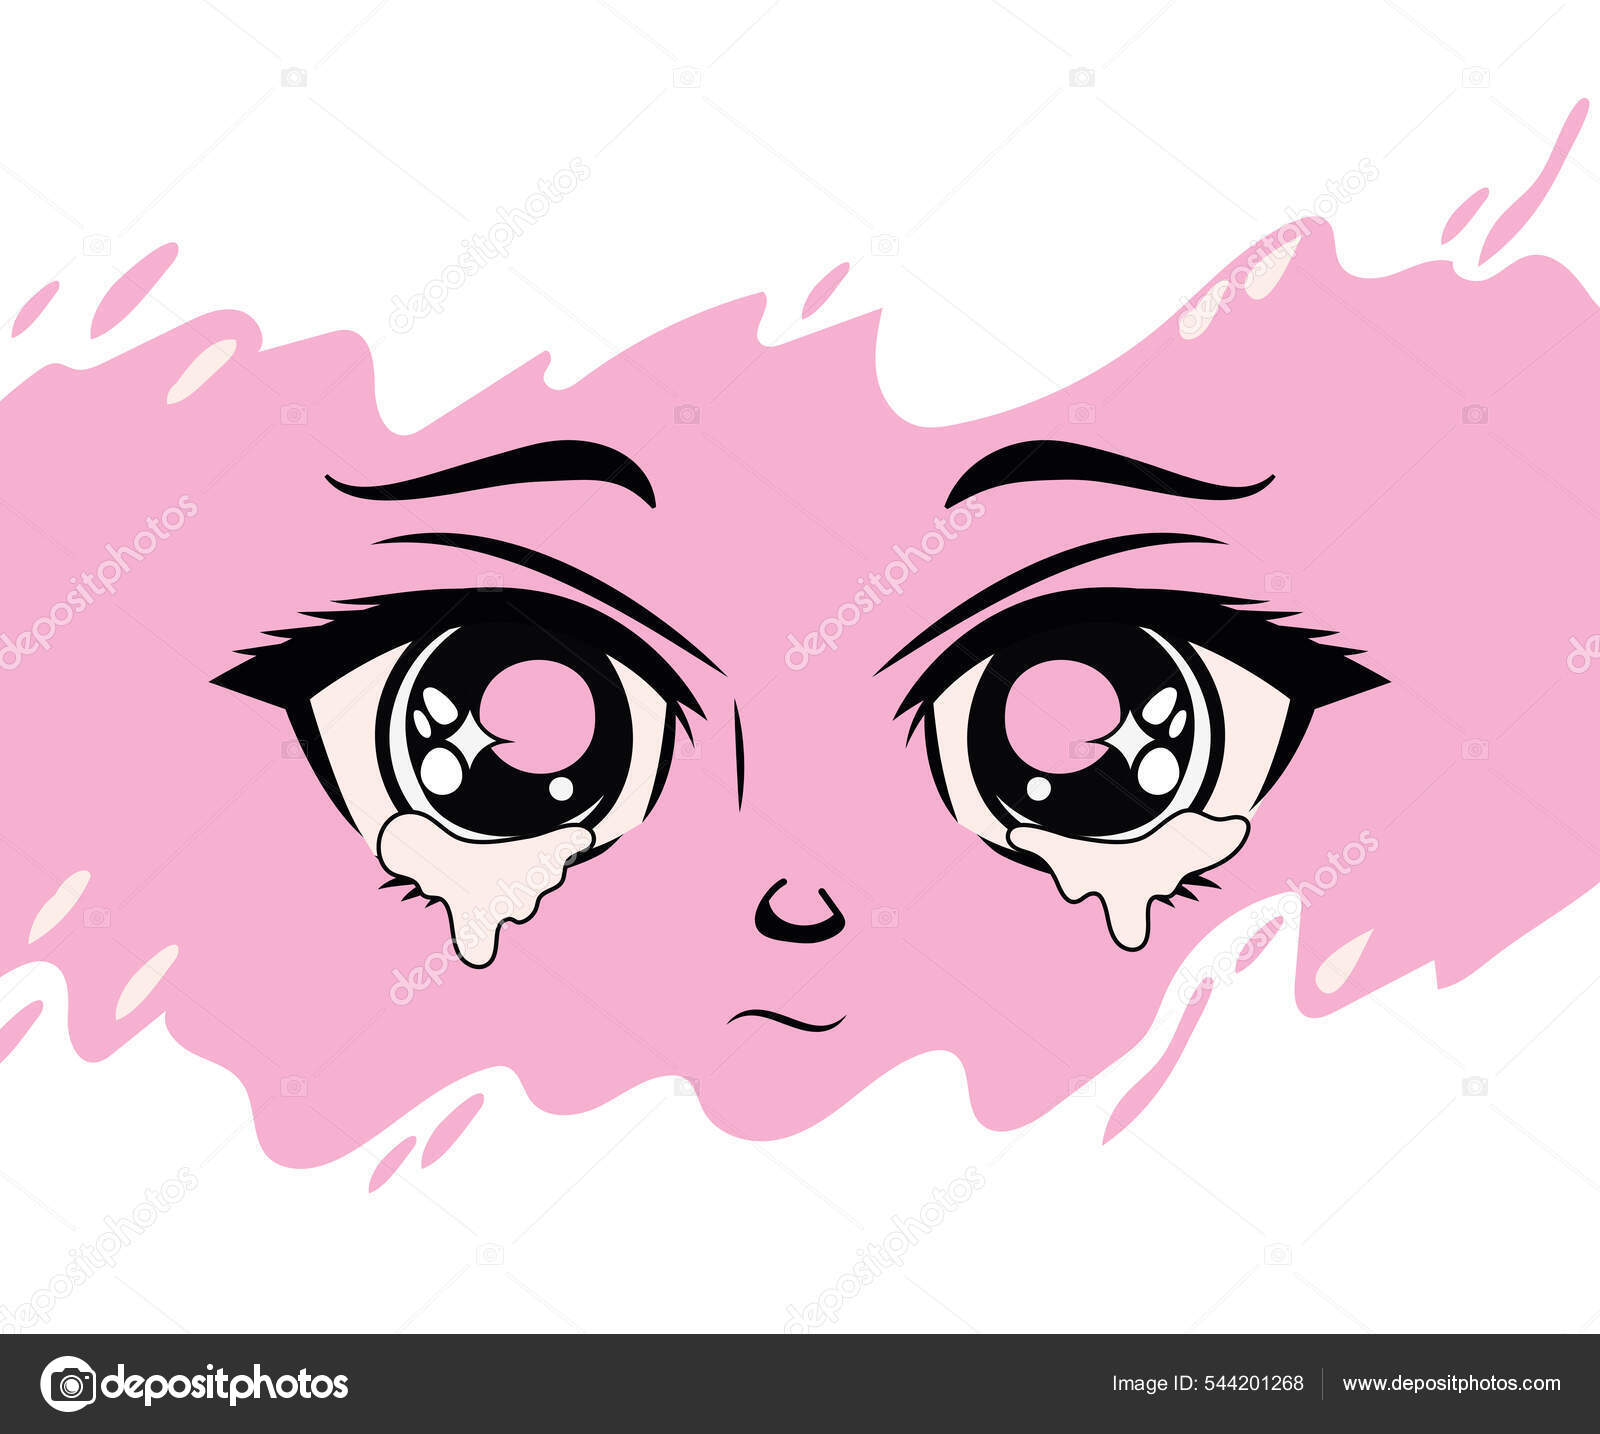 Olhos de anime chorando imagem vetorial de grgroupstock© 544201268